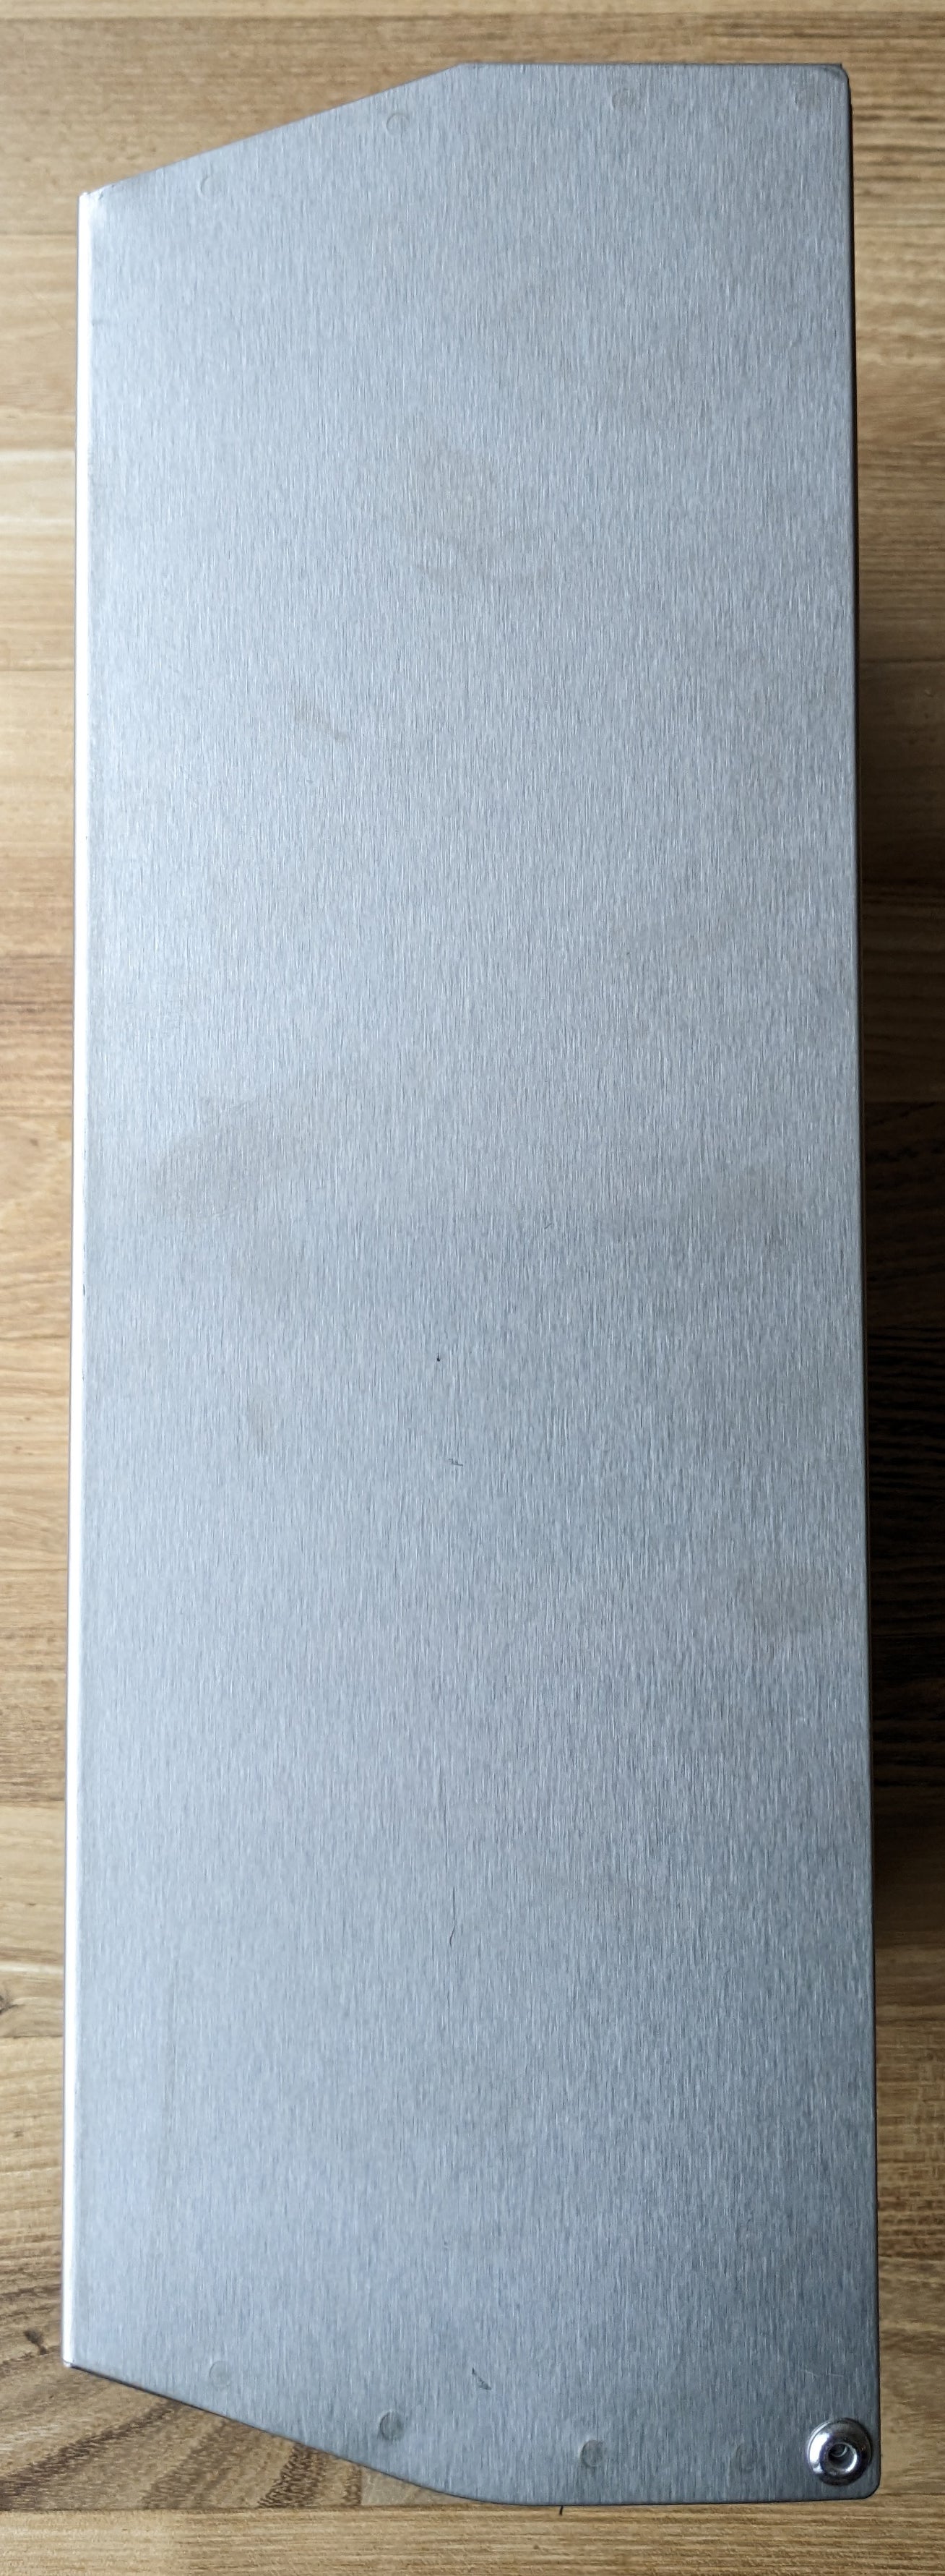 Papierhandtuchspender, Edelstahl  250x370x120